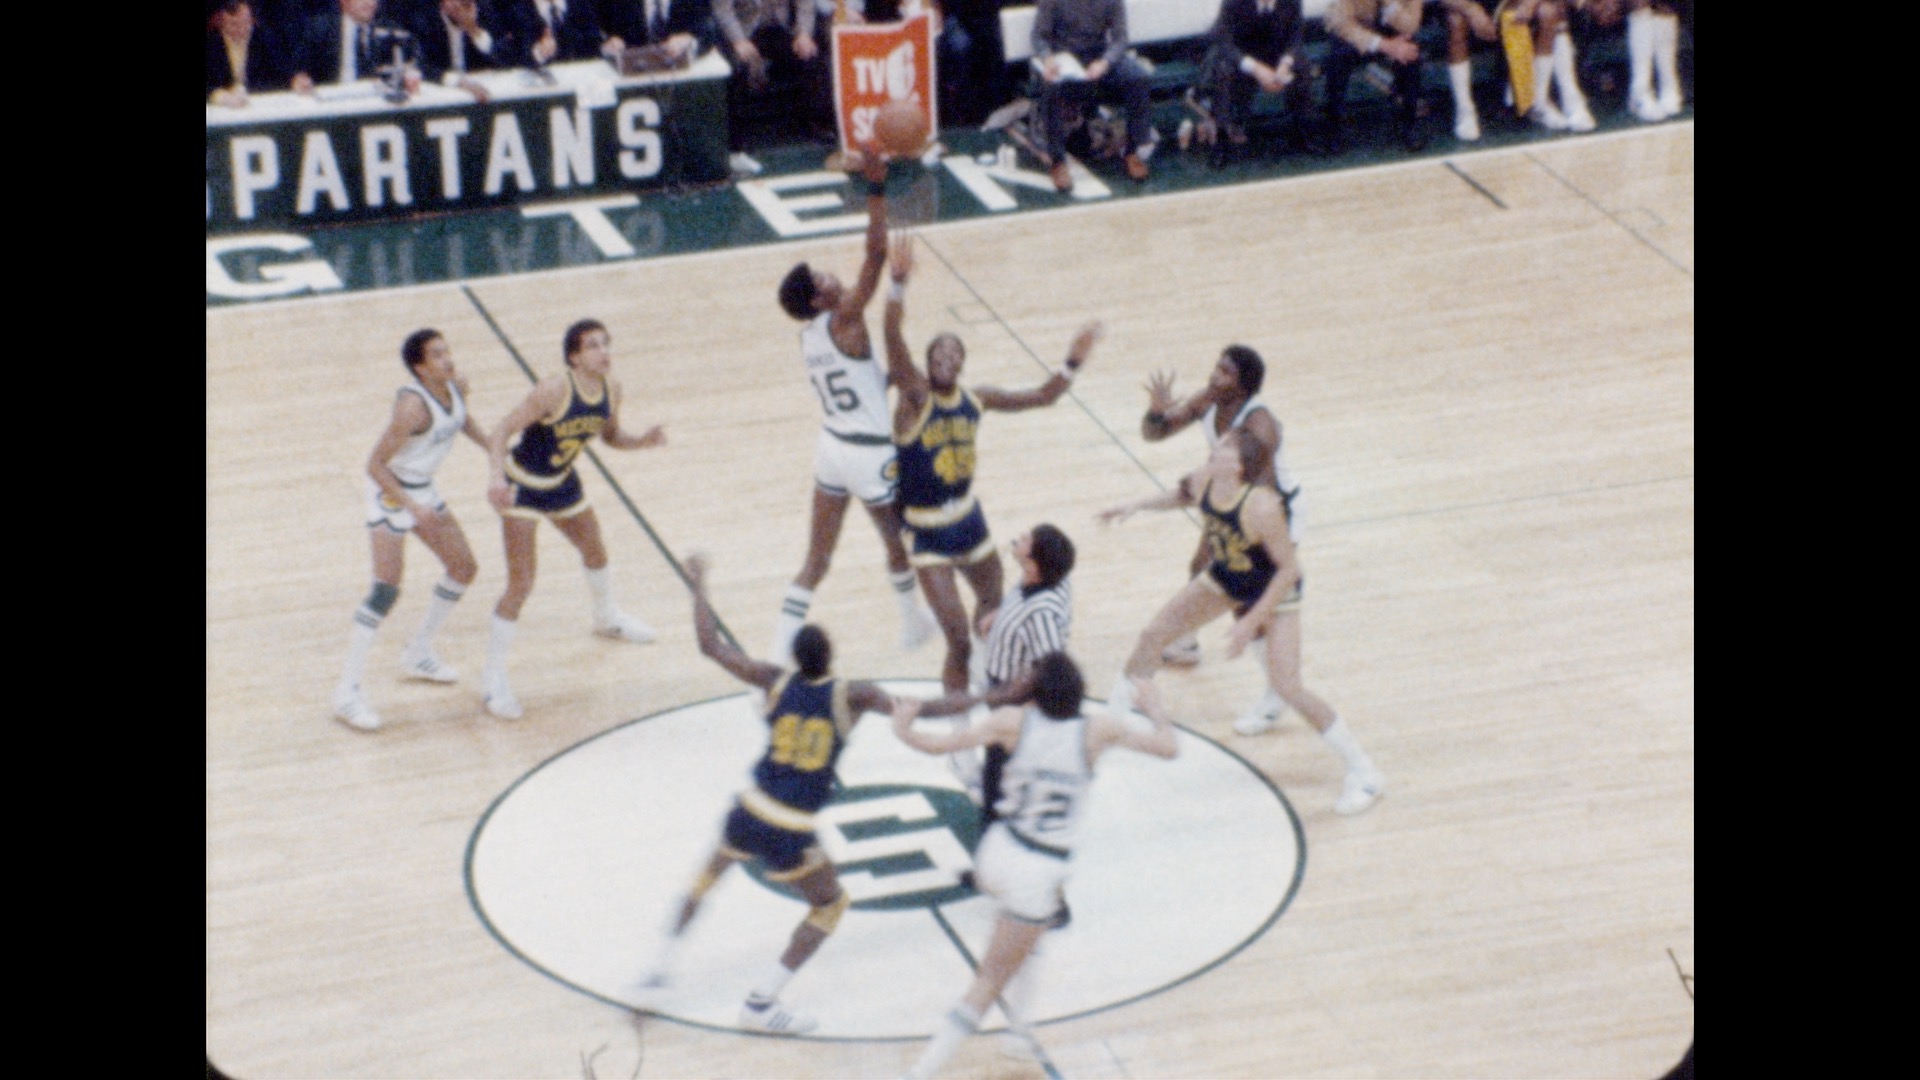 MSU Basketball vs. Michigan (home), 1980